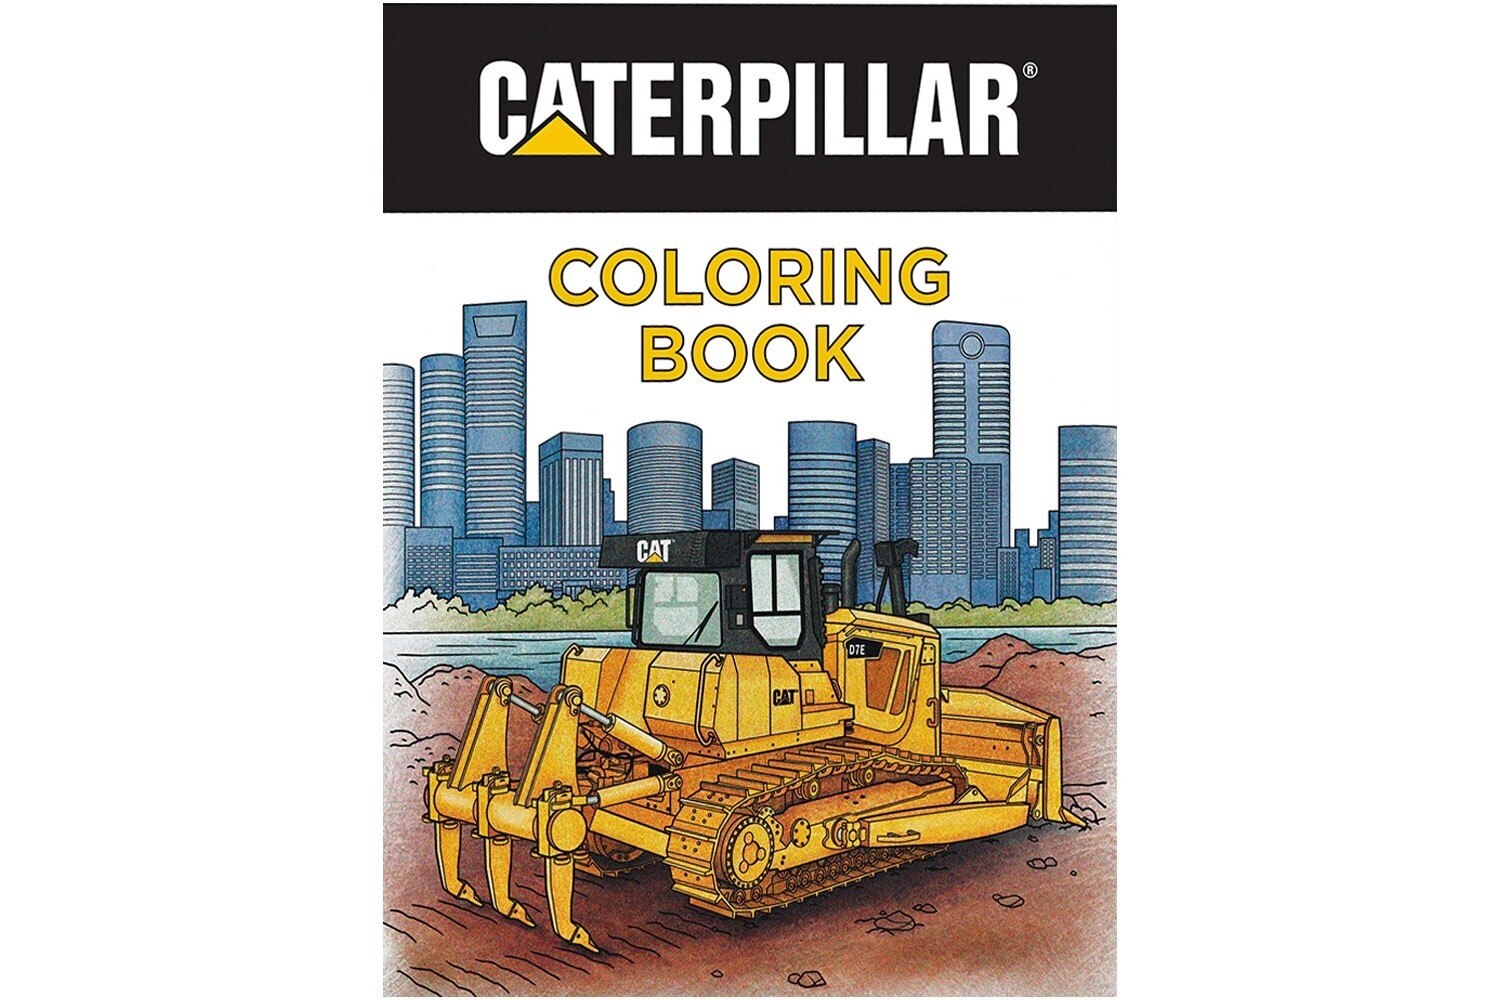 Caterpillar Coloring Book